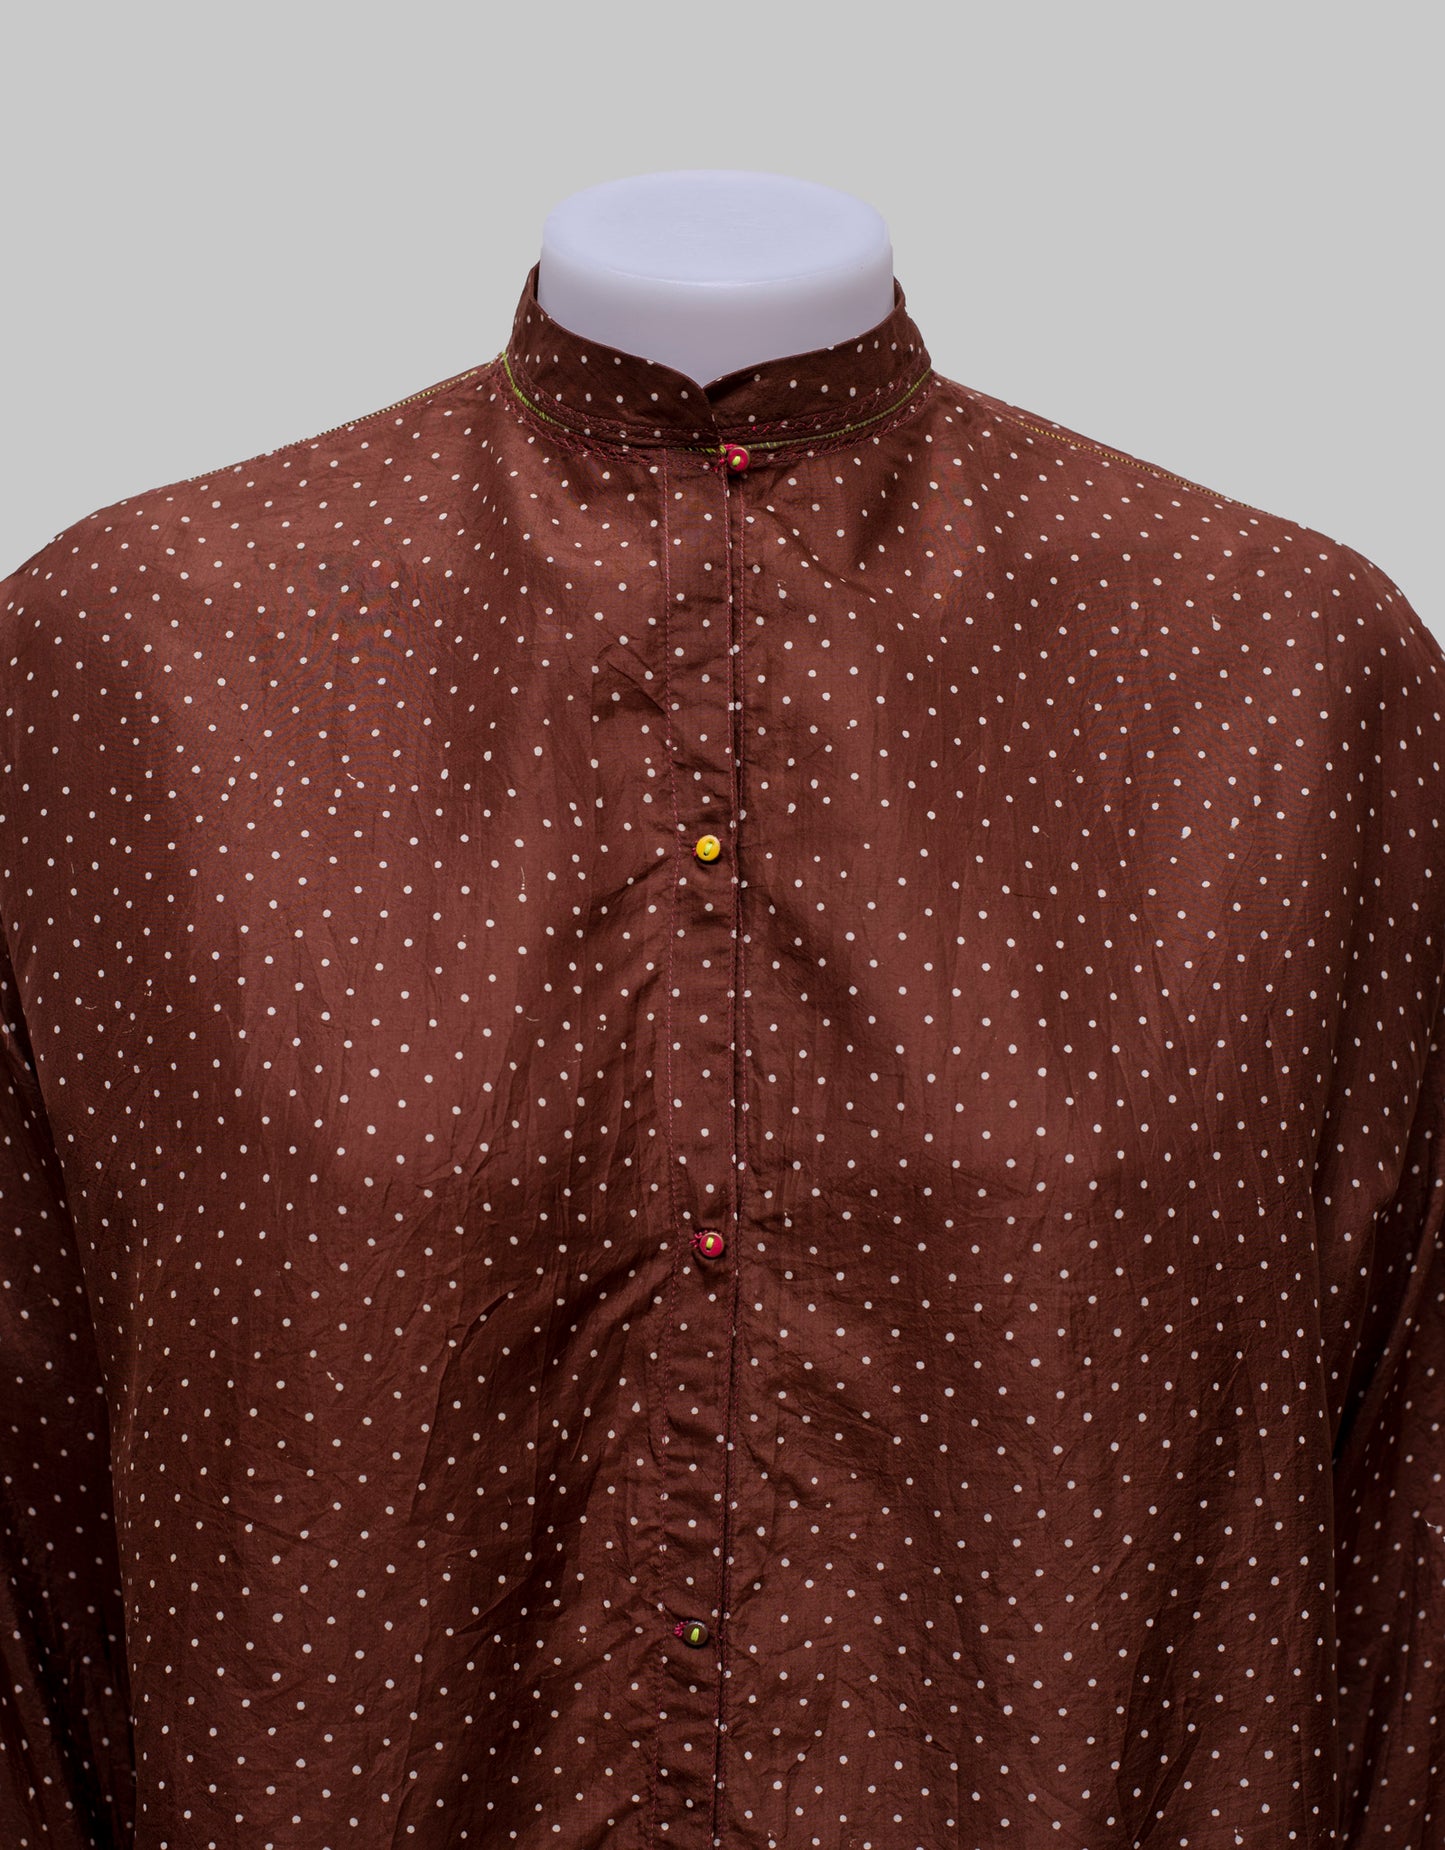 Nilgiri-69 shirt